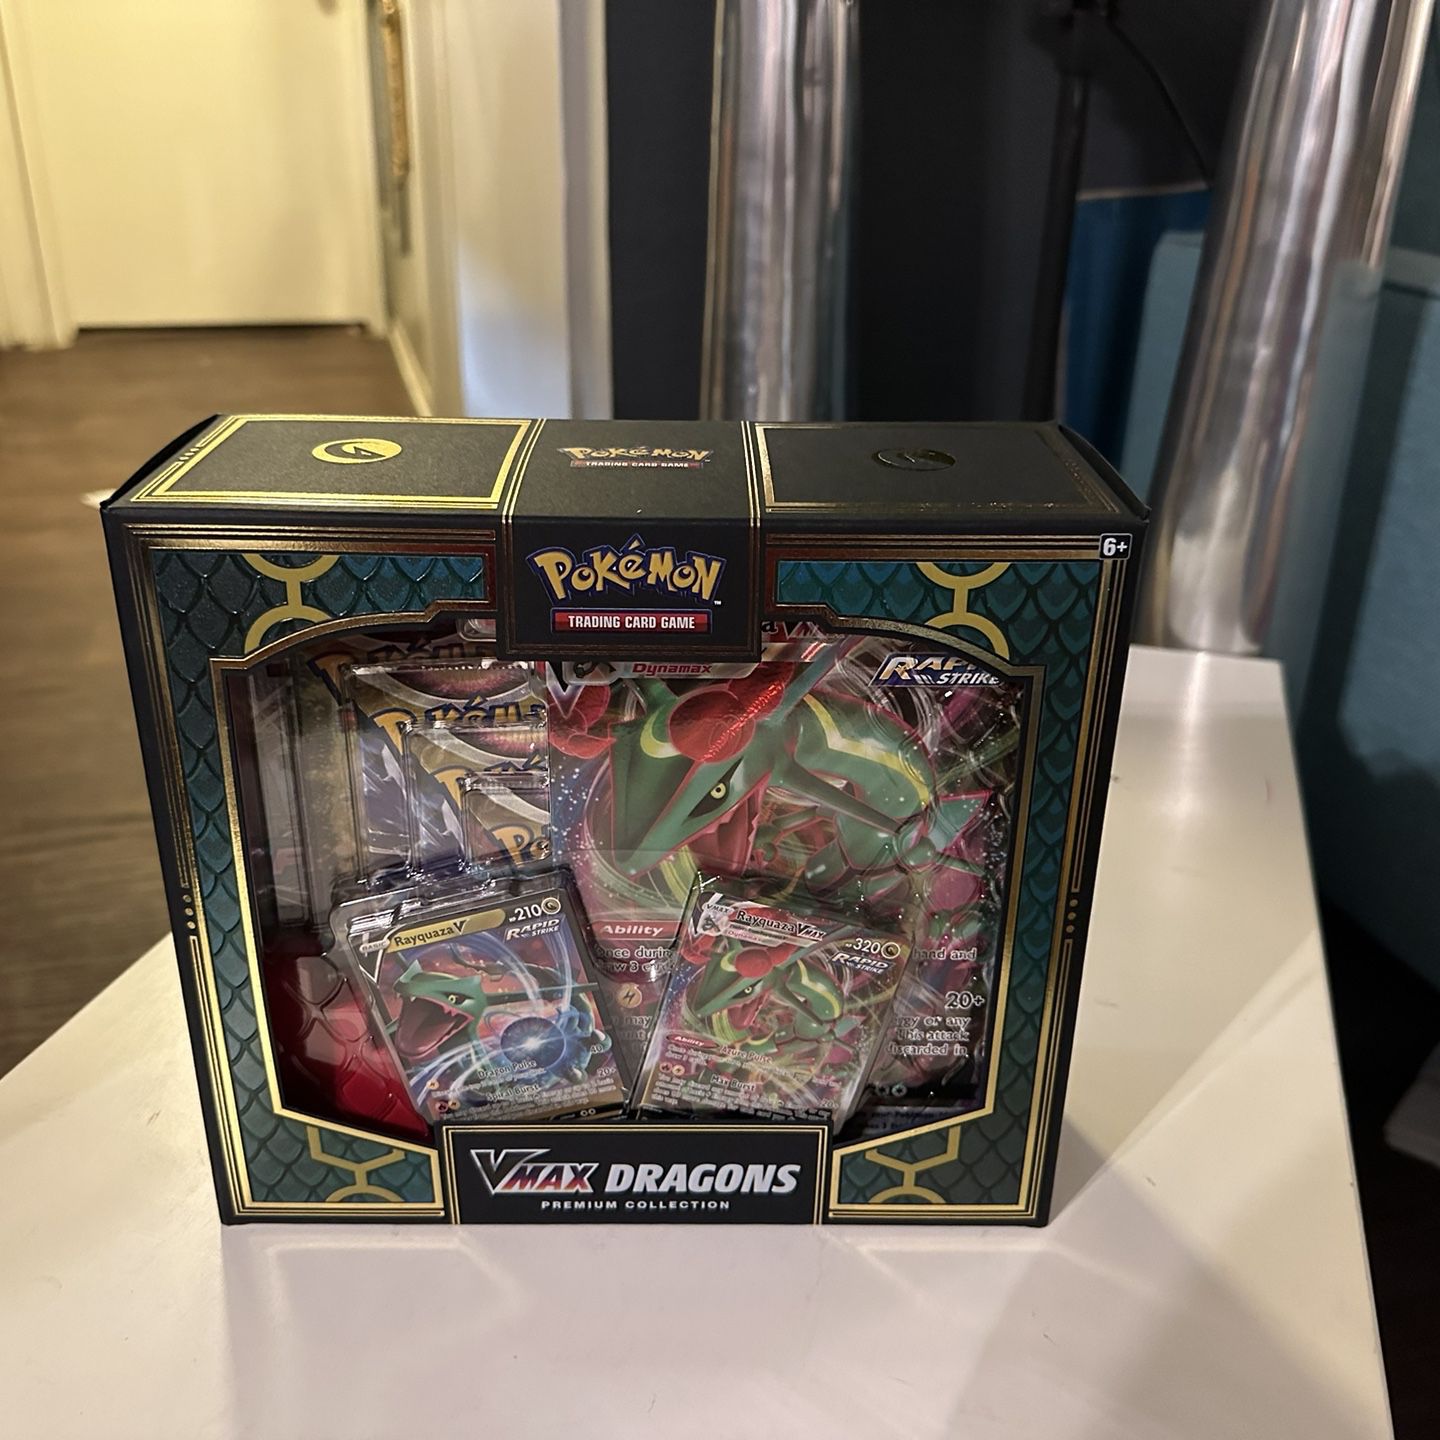 Mavin  Pokemon VMax Dragons Premium Collection - New In Box